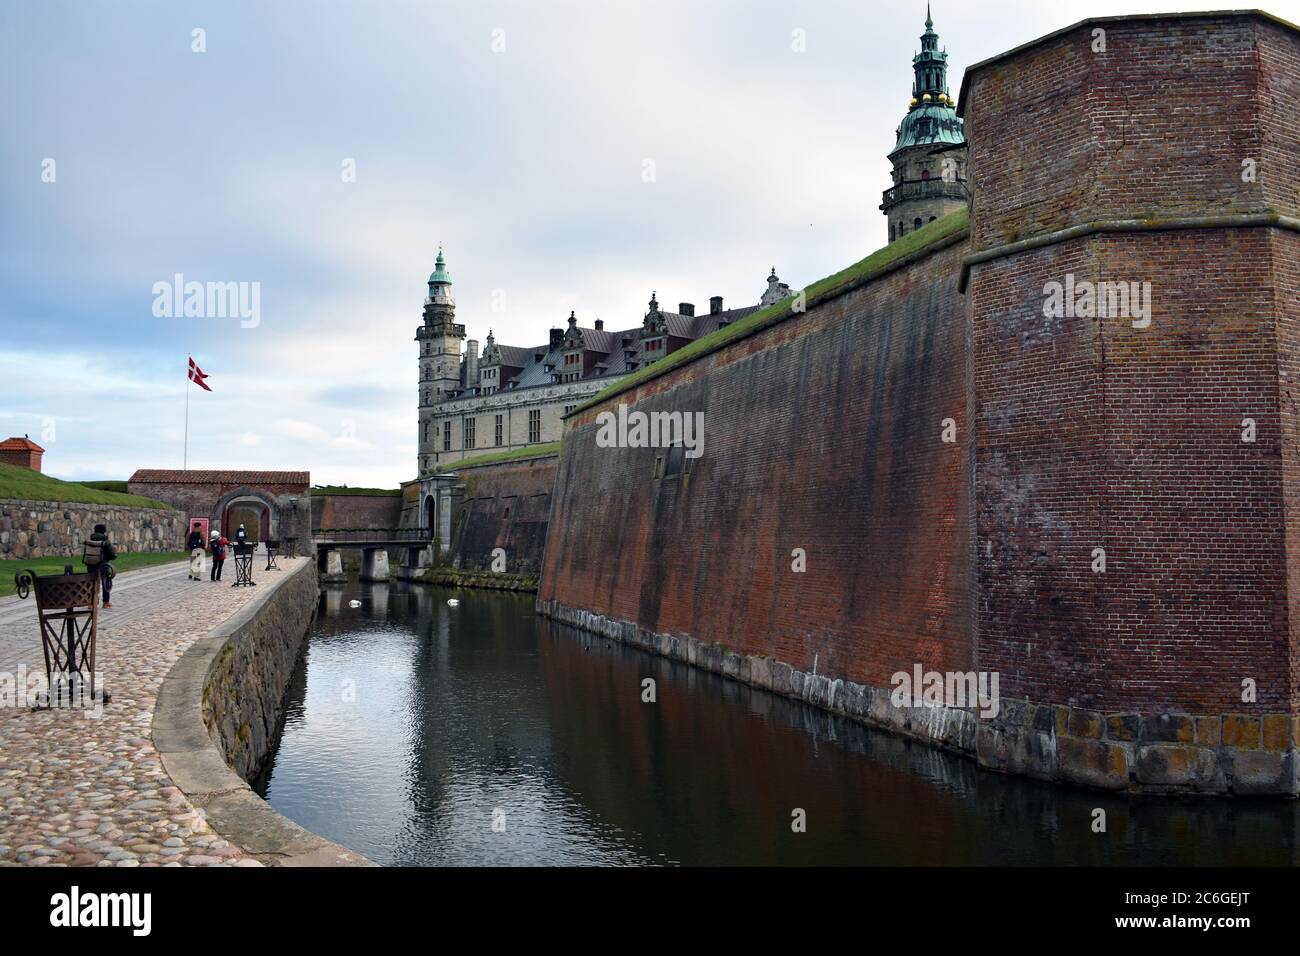 Blick auf Schloss Kronborg hinter den inneren Burgmauern und dem Burggraben. Der Gang in die Burg. Berühmt als das Schloss aus Shakespeares Hamlet. Stockfoto